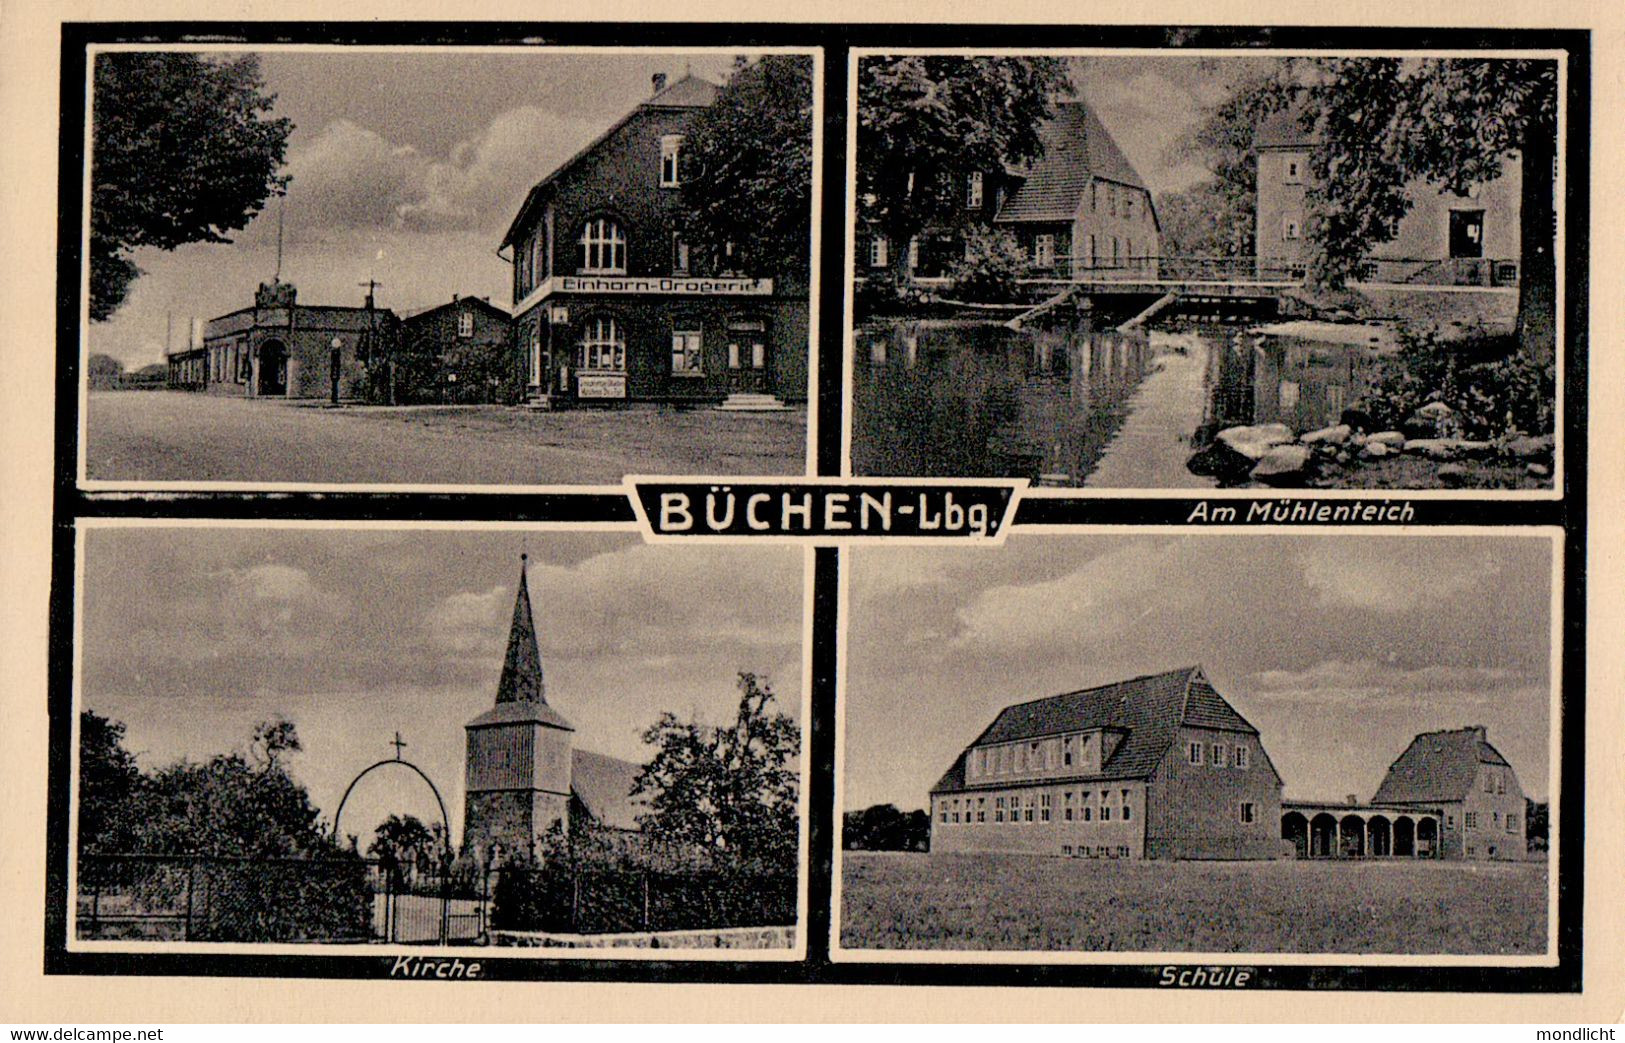 Büchen, Lauenburg. Einhorn-Drogerie, Am Mühlenteich, Kirche, Schule. - Lauenburg